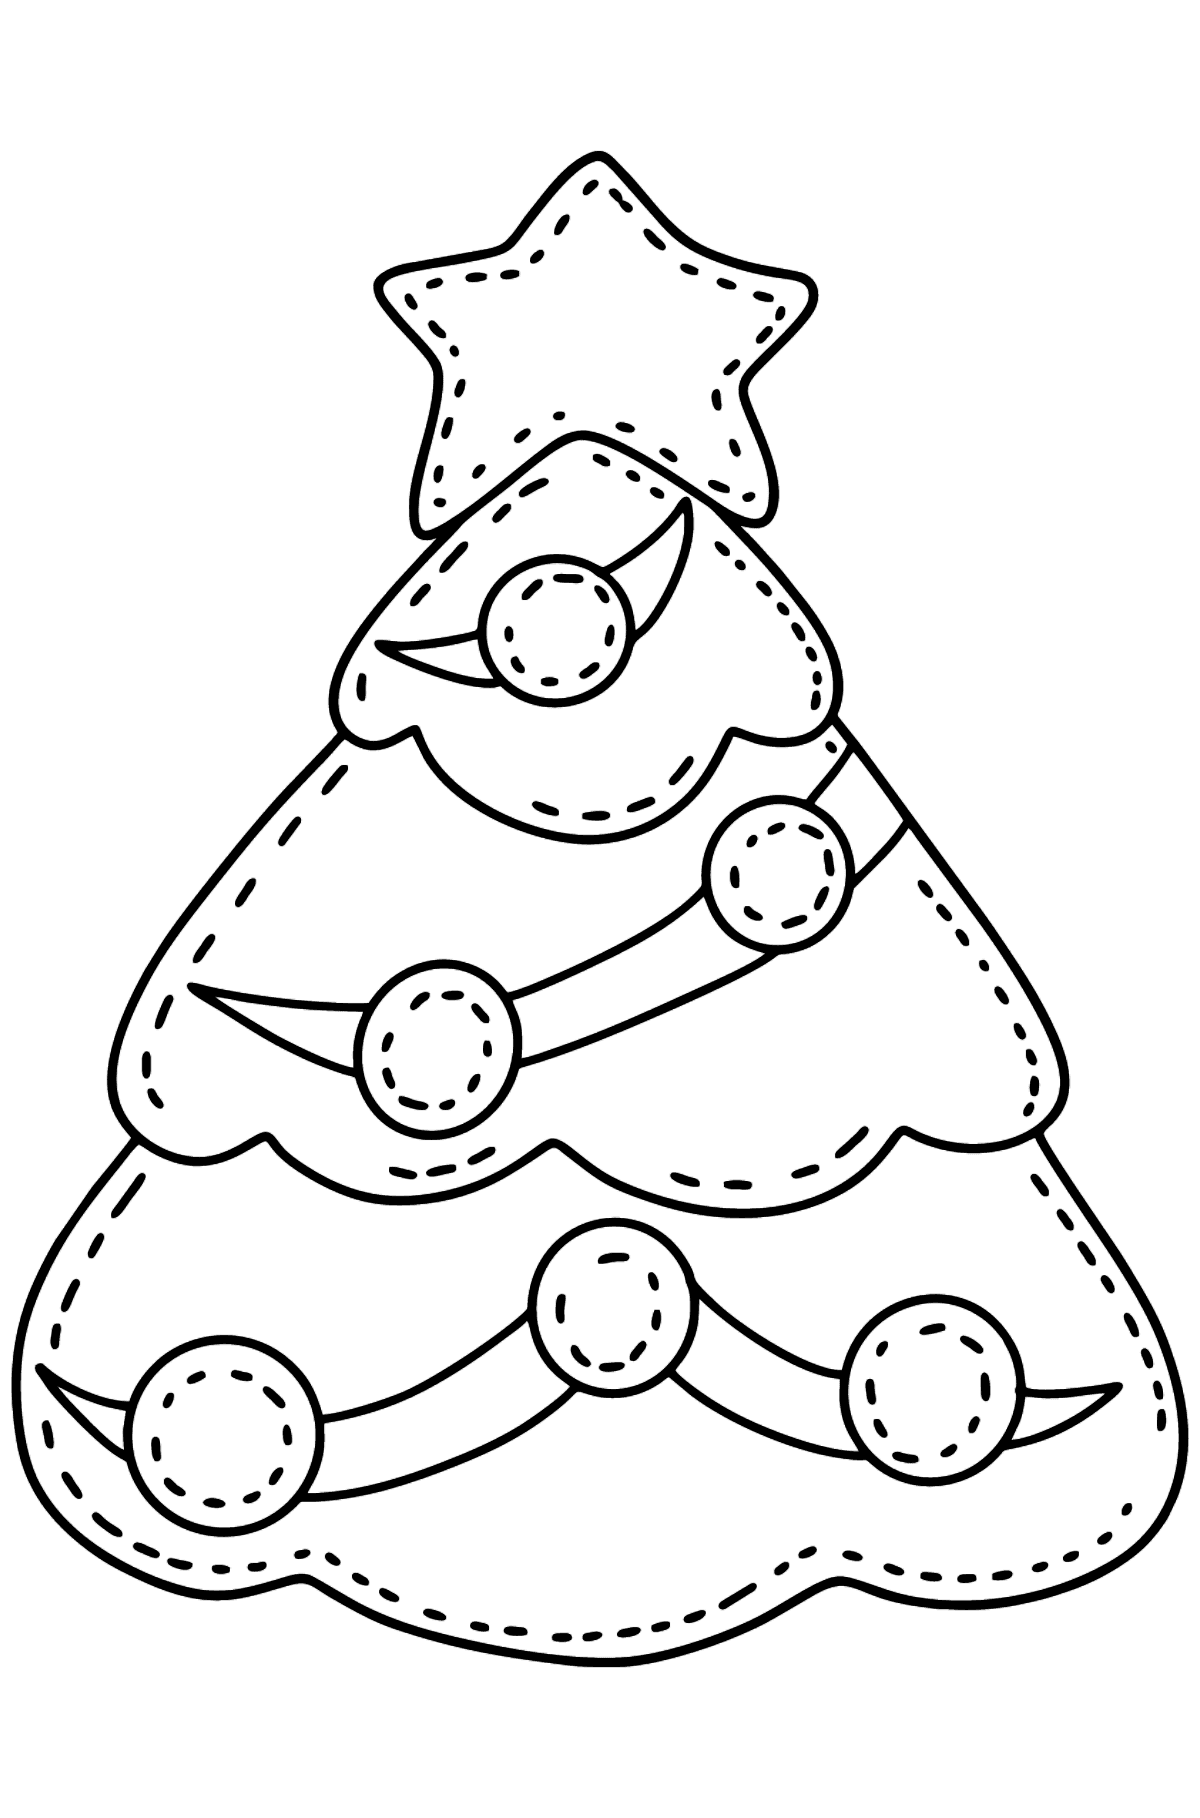 Раскраска елочка из войлока - Картинки для Детей